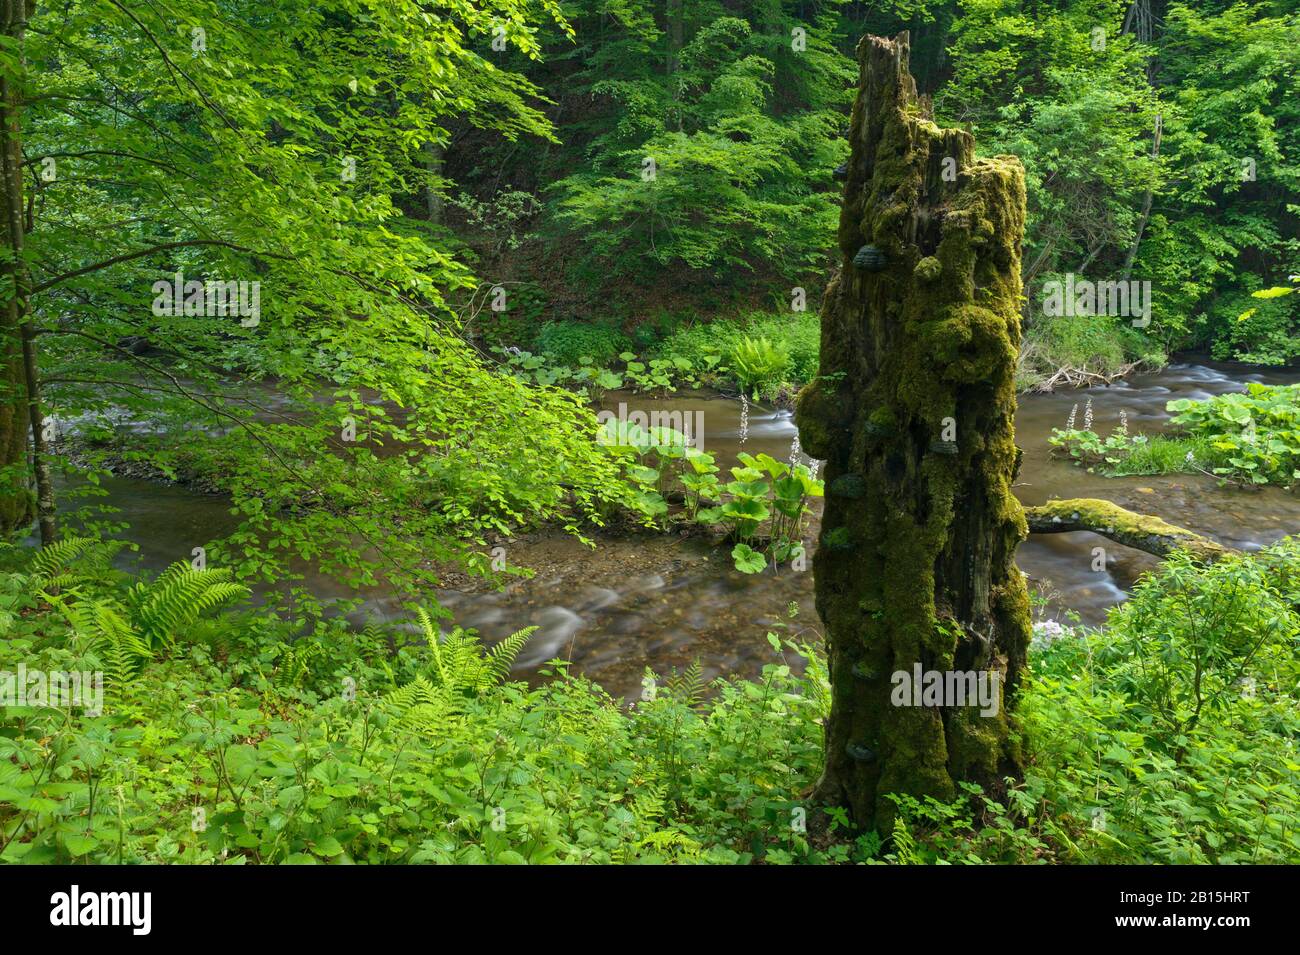 Semenic National Park / Rumänien: UNESCO-Welterbe geschützt Primärwald "Nera Springs". Im Rest des Parks ist Holzeinschlag allgegenwärtig. Stockfoto